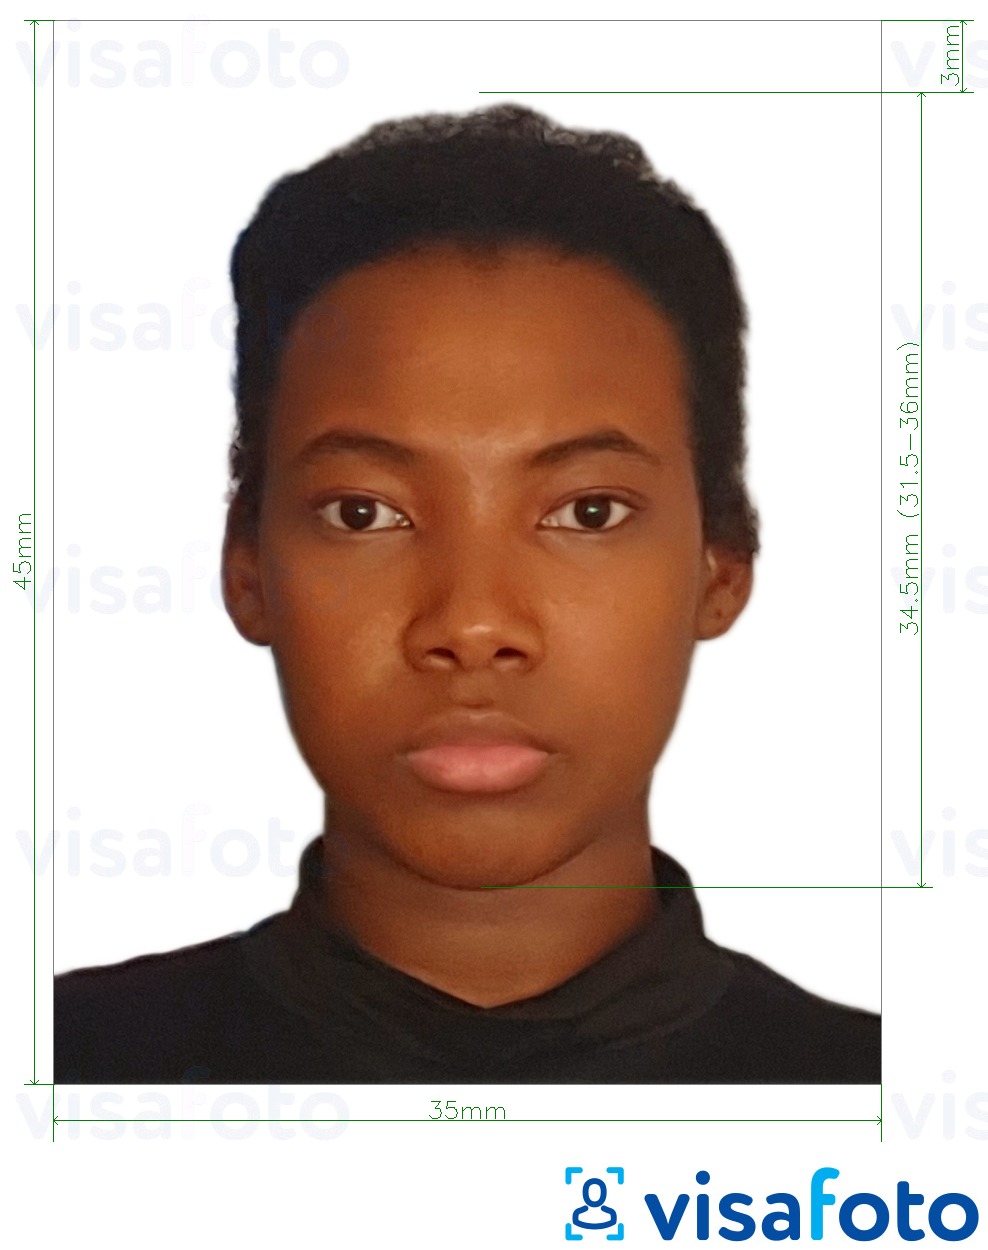 Гайана паспорты 45x35 мм (1.77 х 1.38 дюйм) үшін нақты мөлшер өлшемі бар фото үлгісі